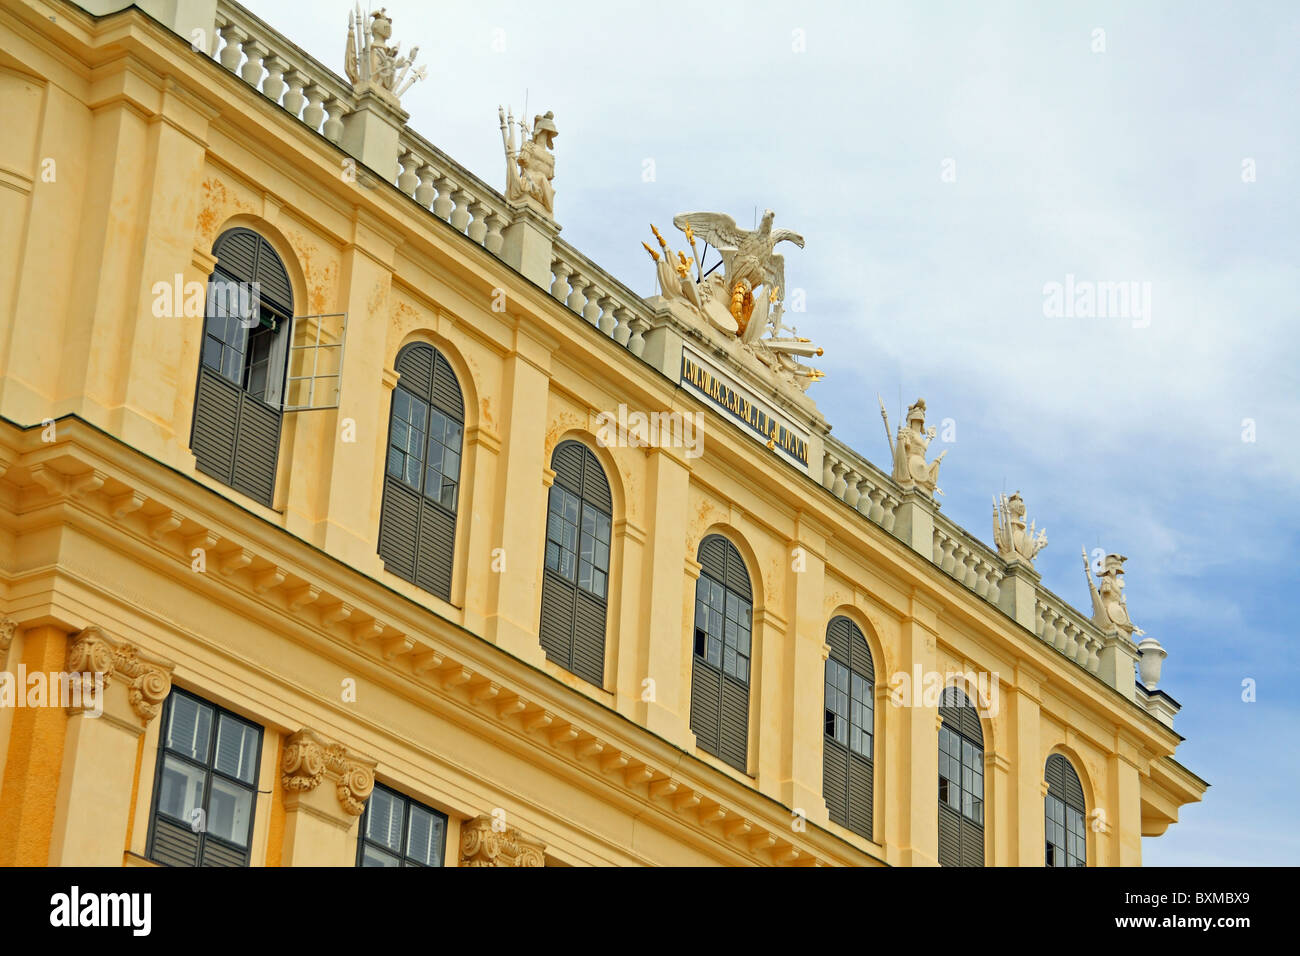 De Albacete / Le palais de Schönbrunn, à Vienne en Autriche. Une ancienne maison d'été impérial de la dynastie des Habsbourgs Banque D'Images